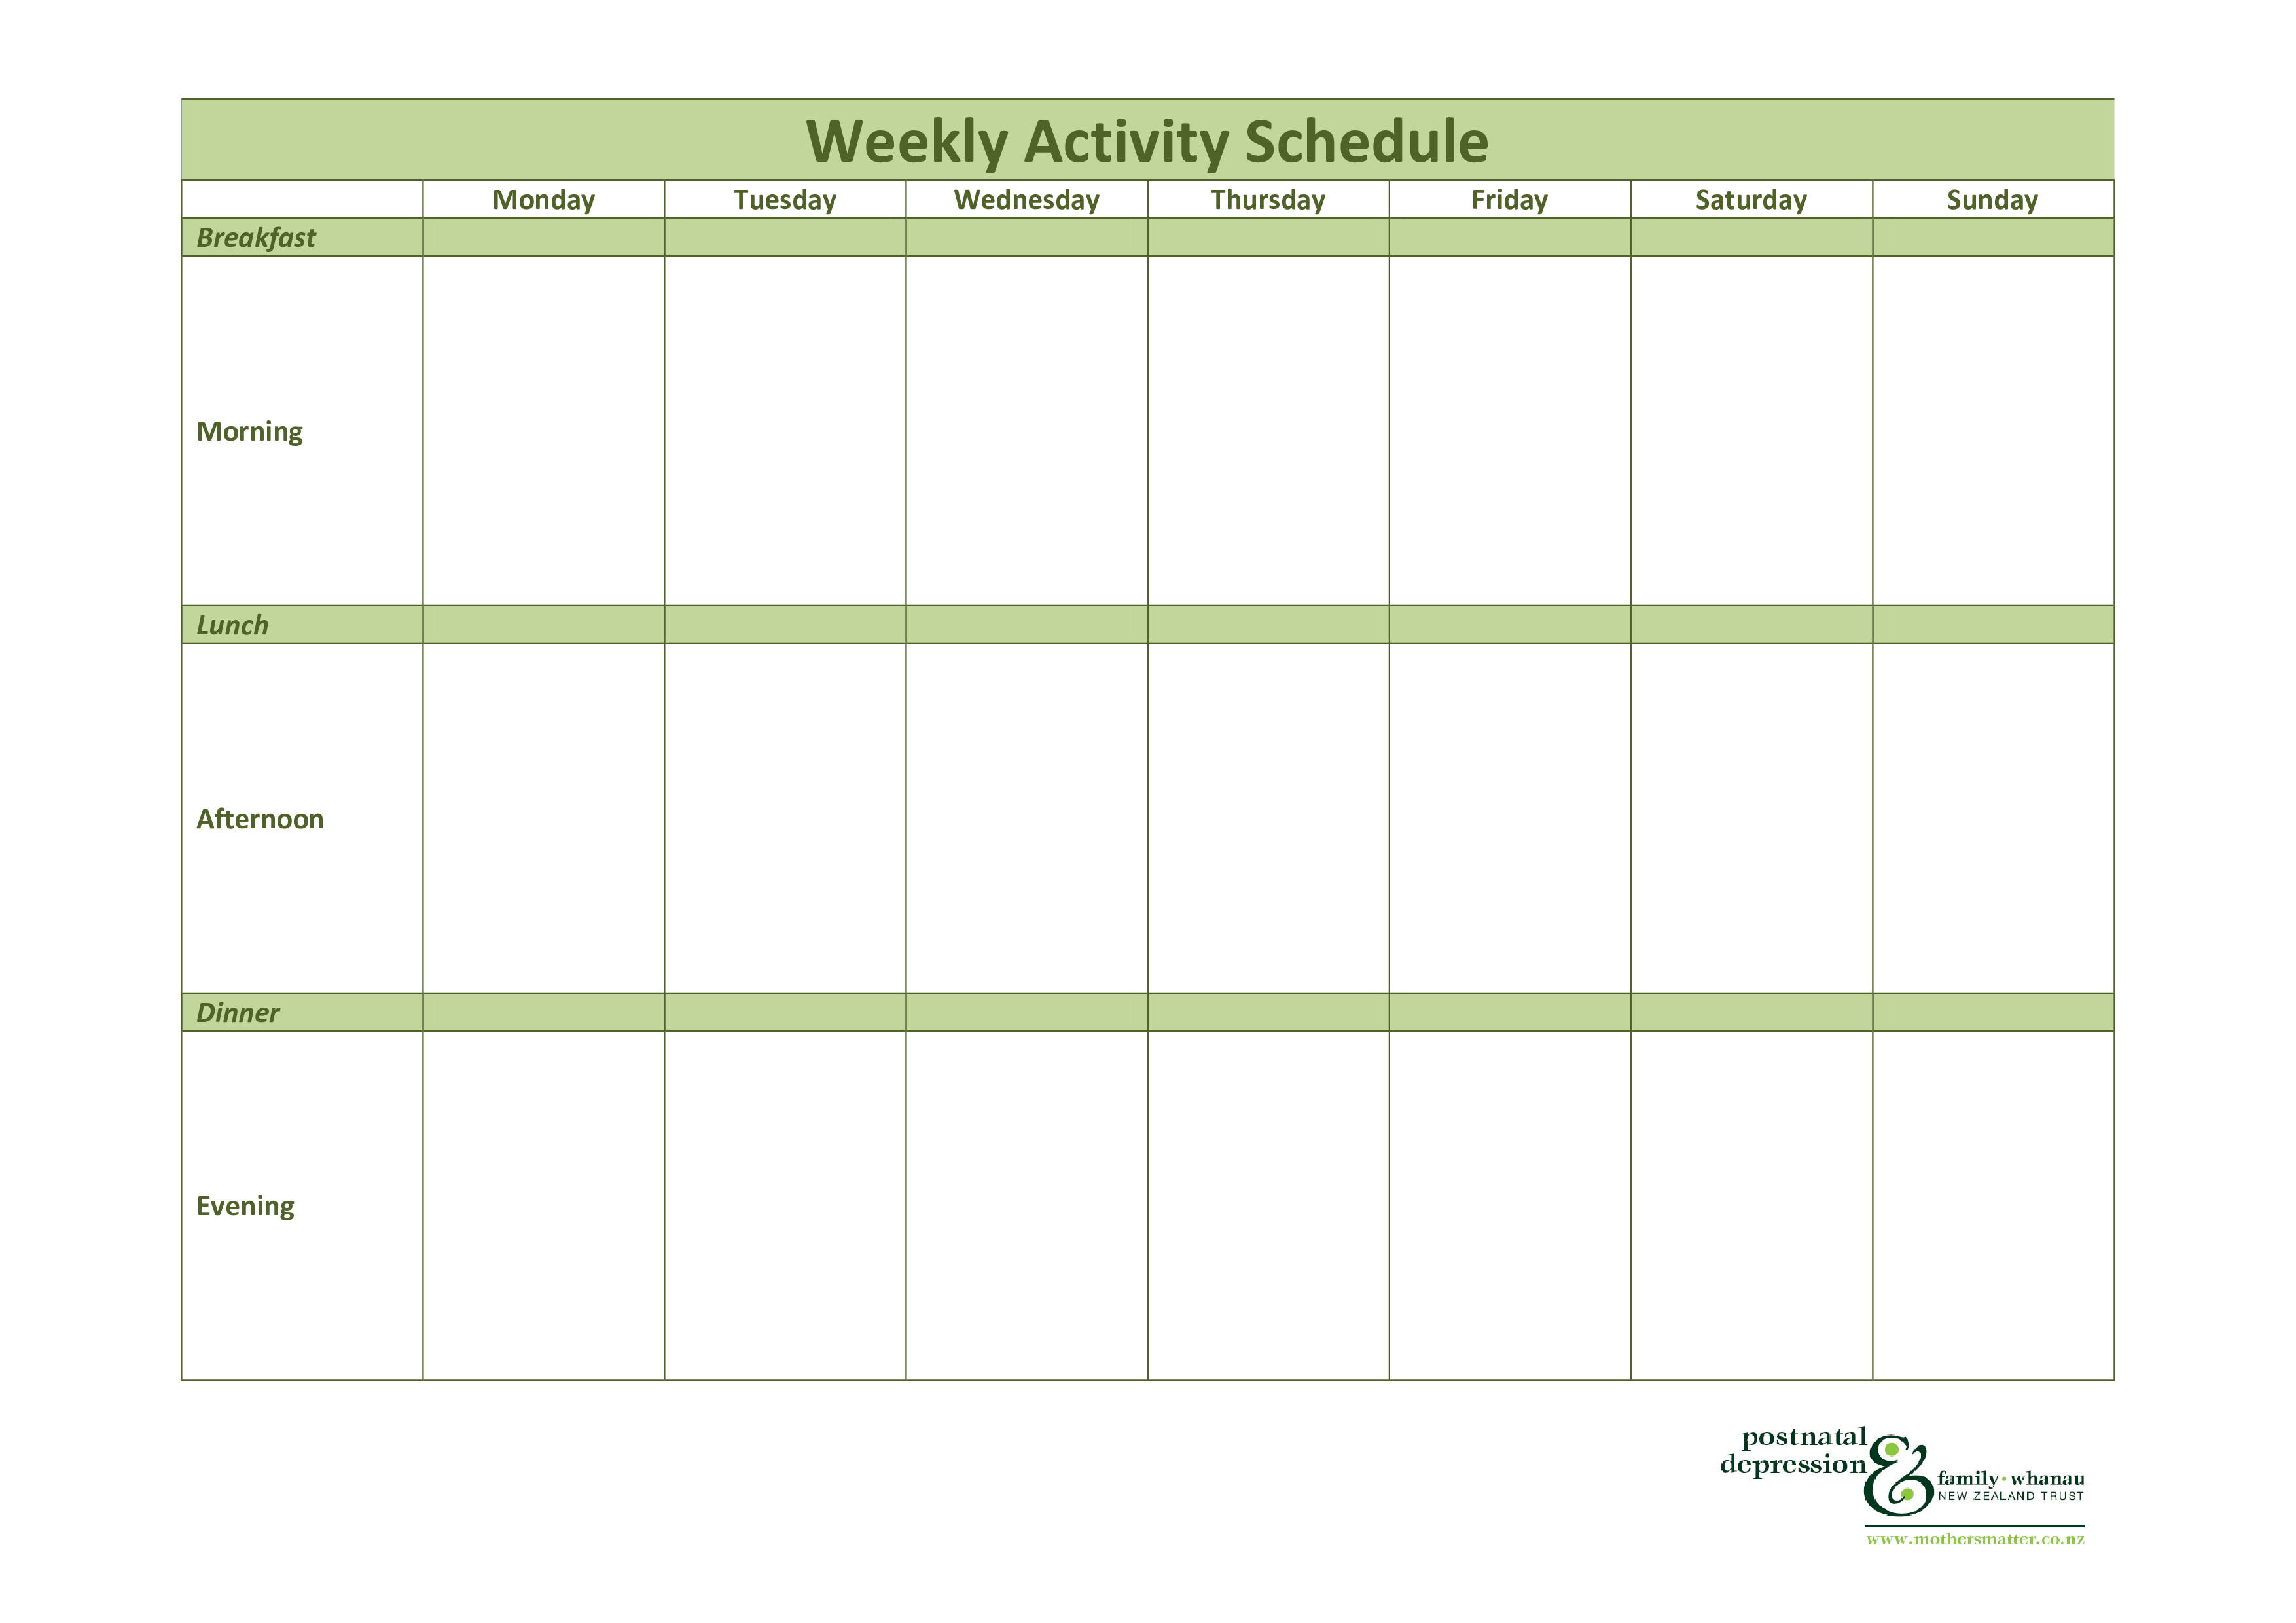 Patient Weekly Activity Schedule main image